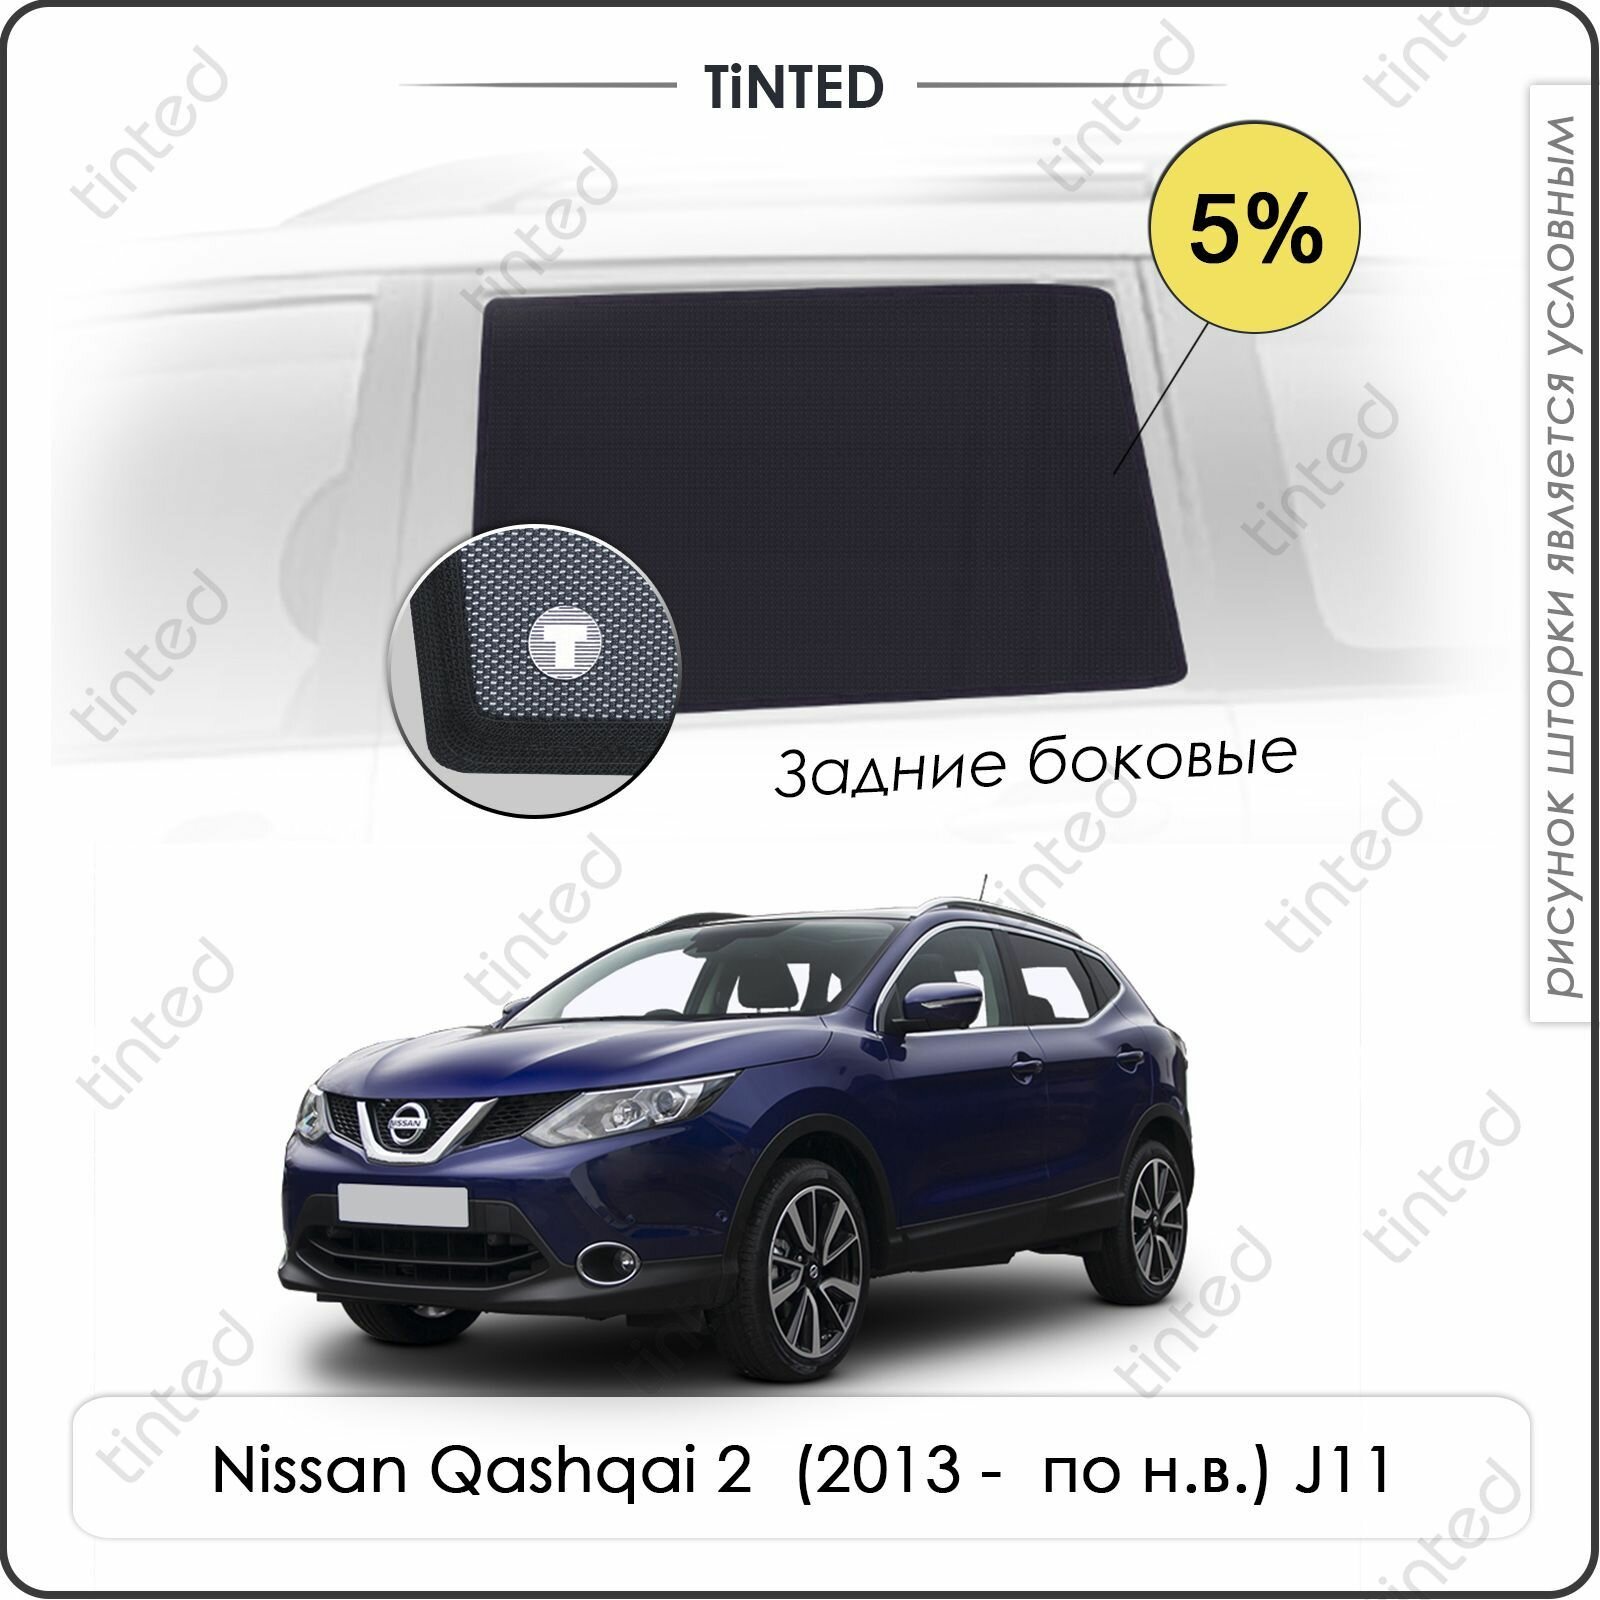 Шторки на автомобиль солнцезащитные Nissan Qashqai 2 Кроссовер 5дв. (2013 - по н. в.) J11 на задние двери 5% сетки от солнца в машину ниссан кашкай Каркасные автошторки Premium